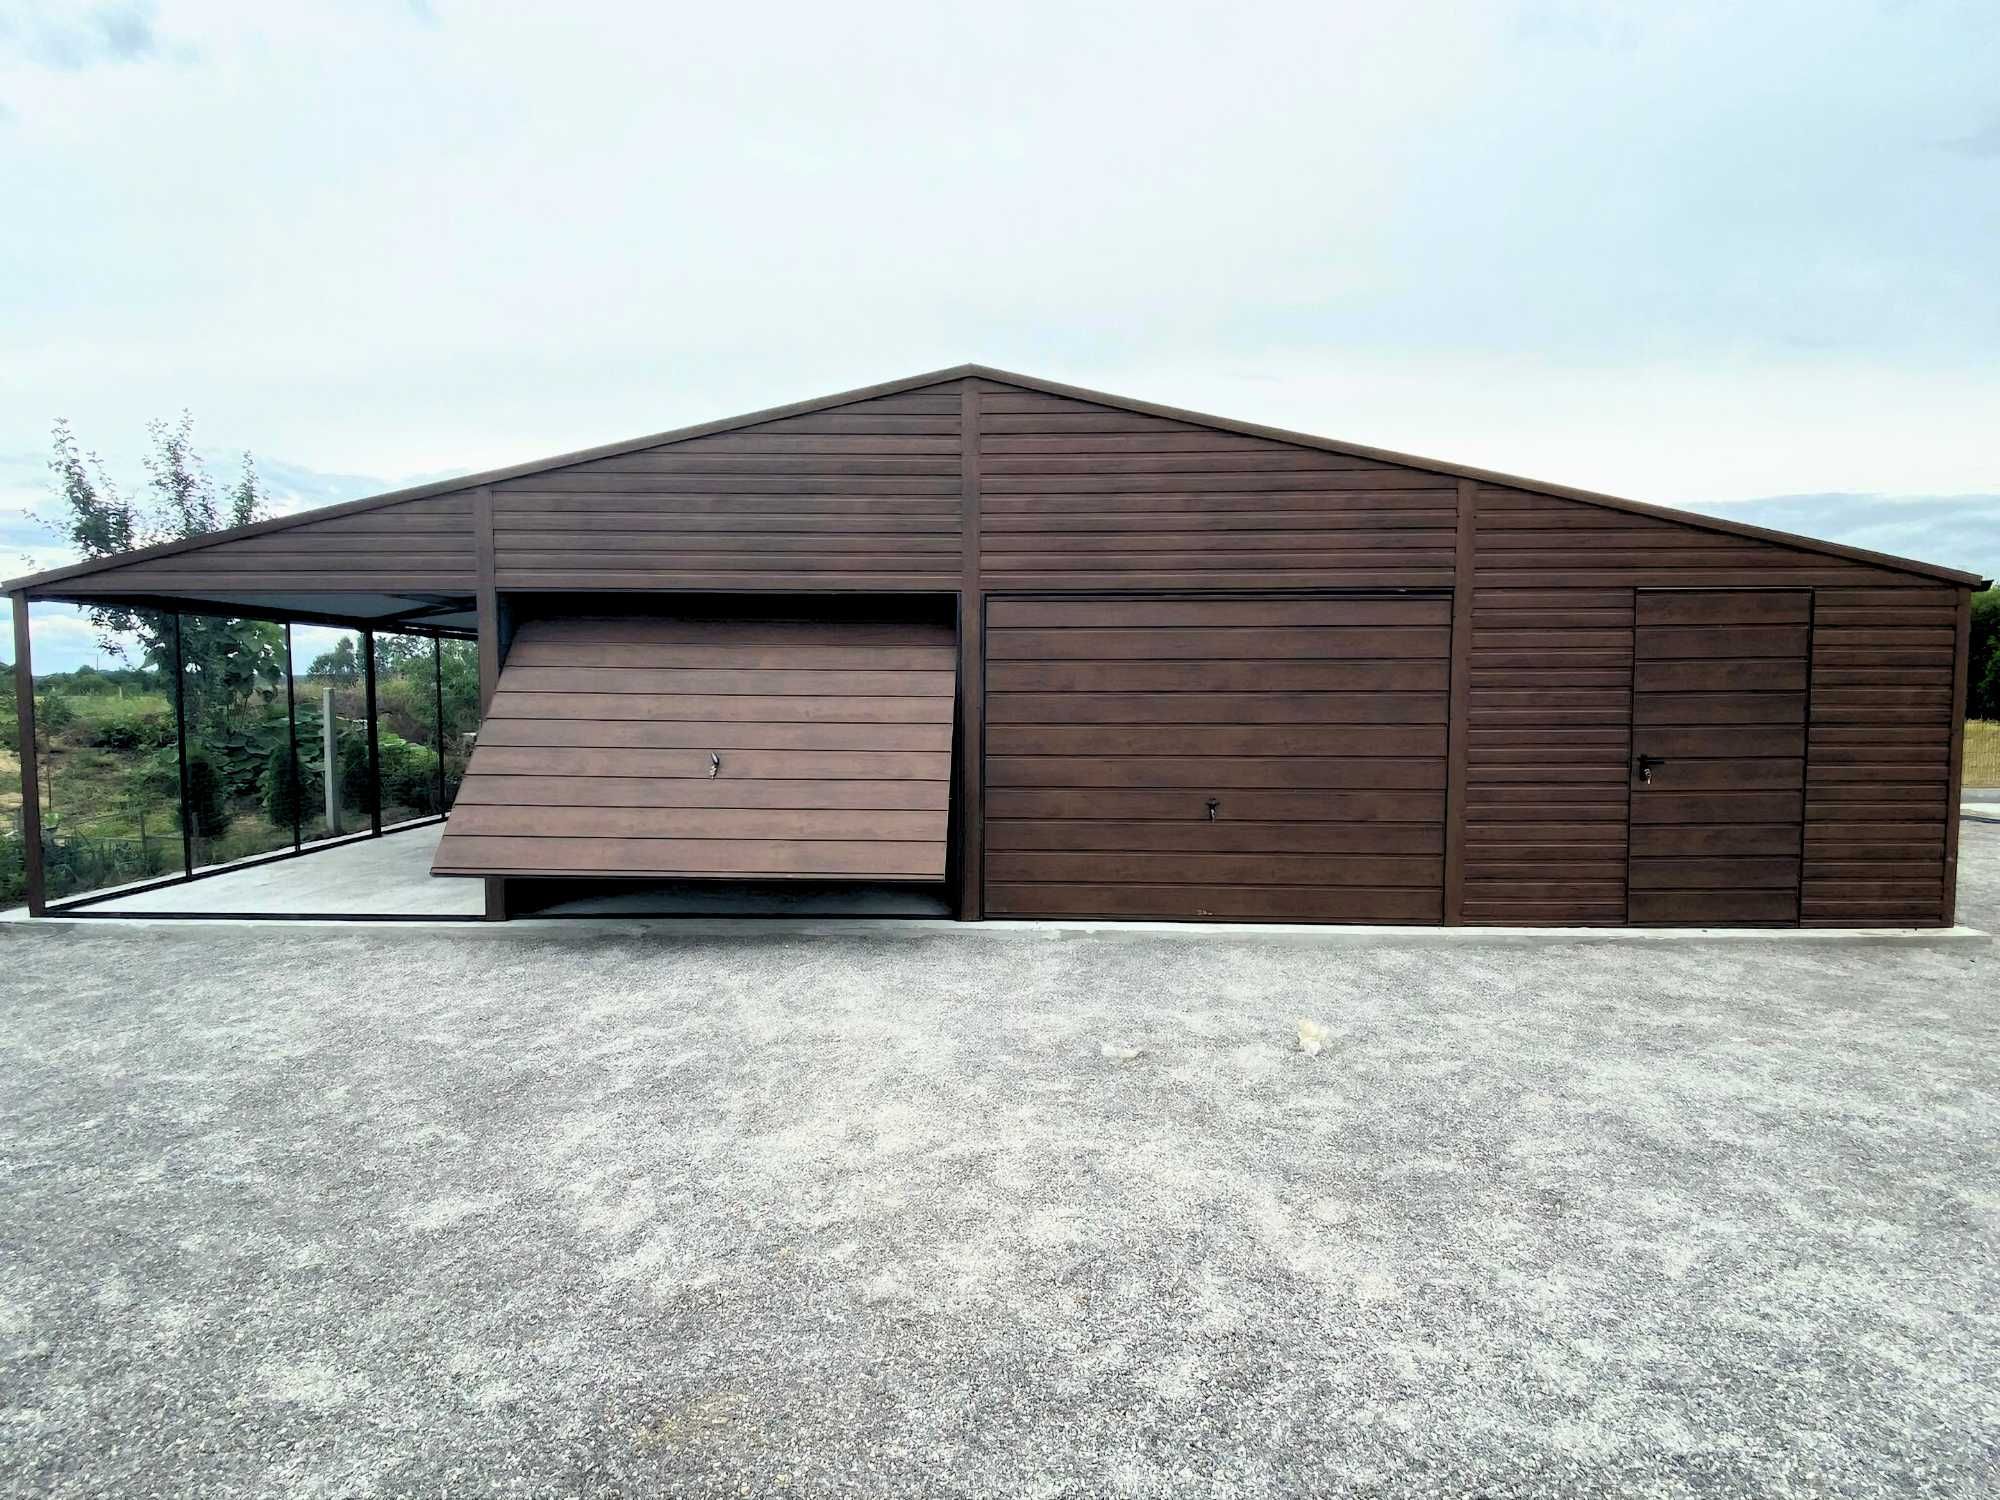 Garaż blaszany hala solidny garaz drewnopodobny 12x6m |13x7 14x8 15x10